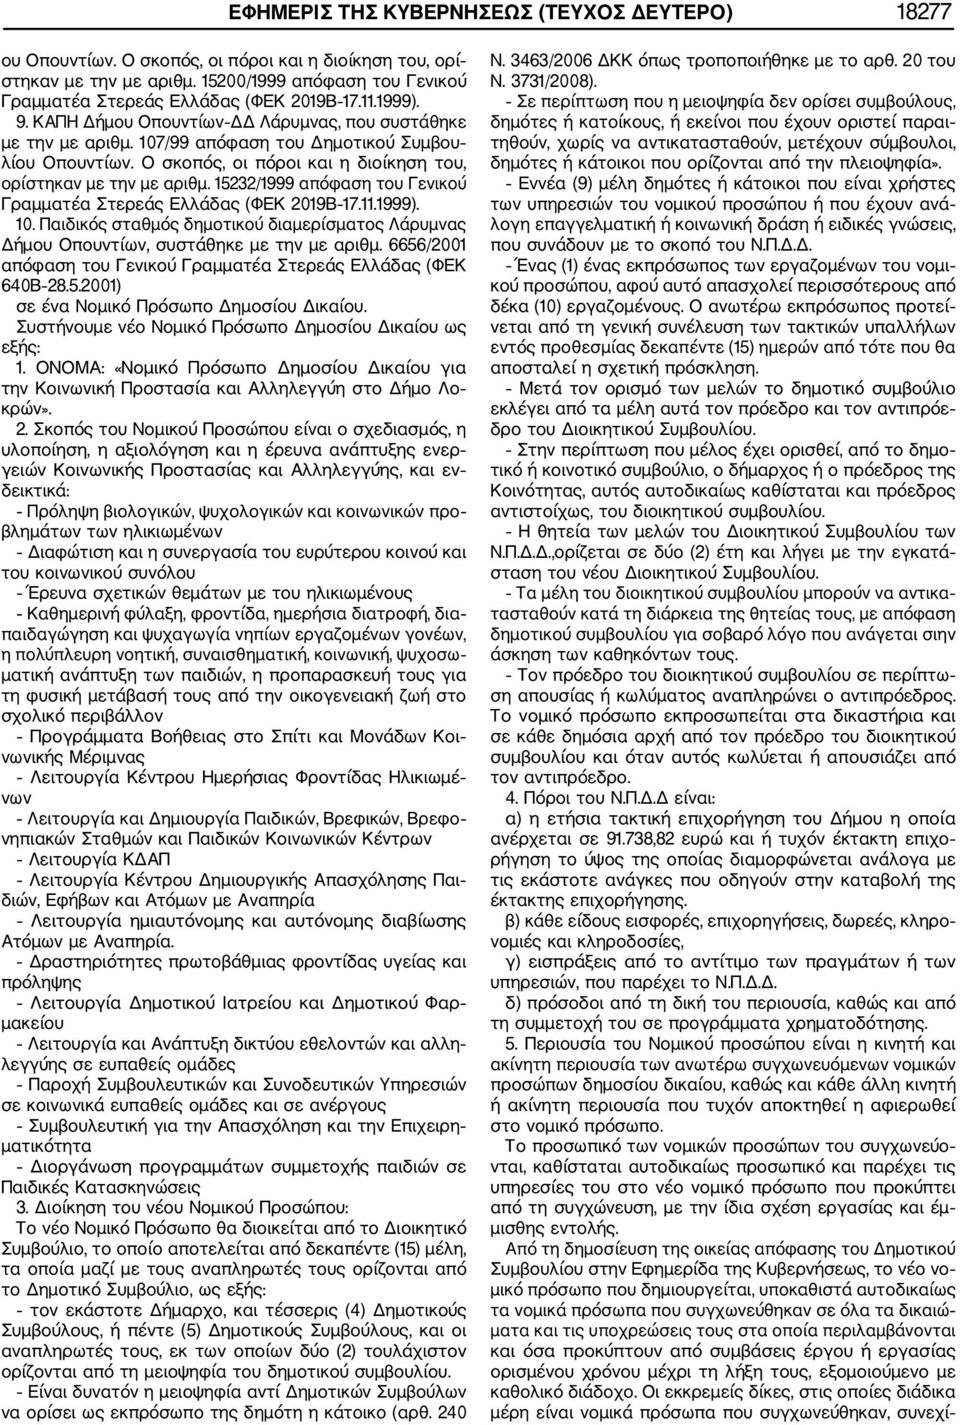 15232/1999 απόφαση του Γενικού Γραμματέα Στερεάς Ελλάδας (ΦΕΚ 2019Β 17.11.1999). 10. Παιδικός σταθμός δημοτικού διαμερίσματος Λάρυμνας Δήμου Οπουντίων, συστάθηκε με την με αριθμ.